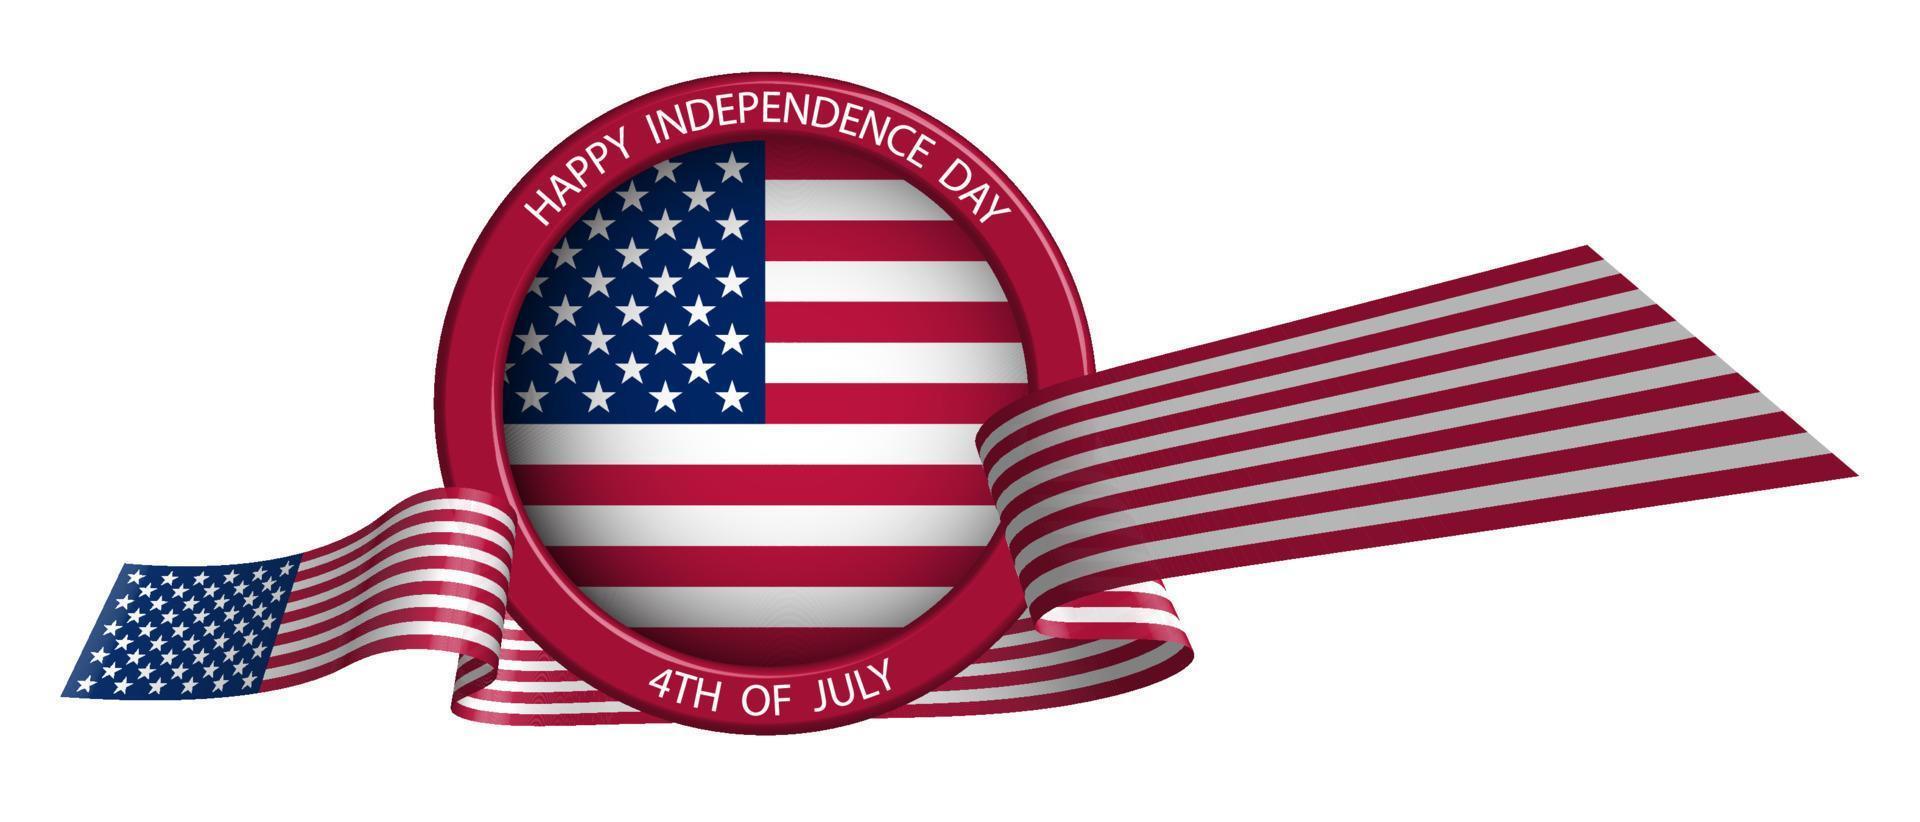 emblem, etikett, etikett med band i amerikanska flaggans färger. festligt designelement för självständighetsdagen USA. isolerade vektor på vit bakgrund